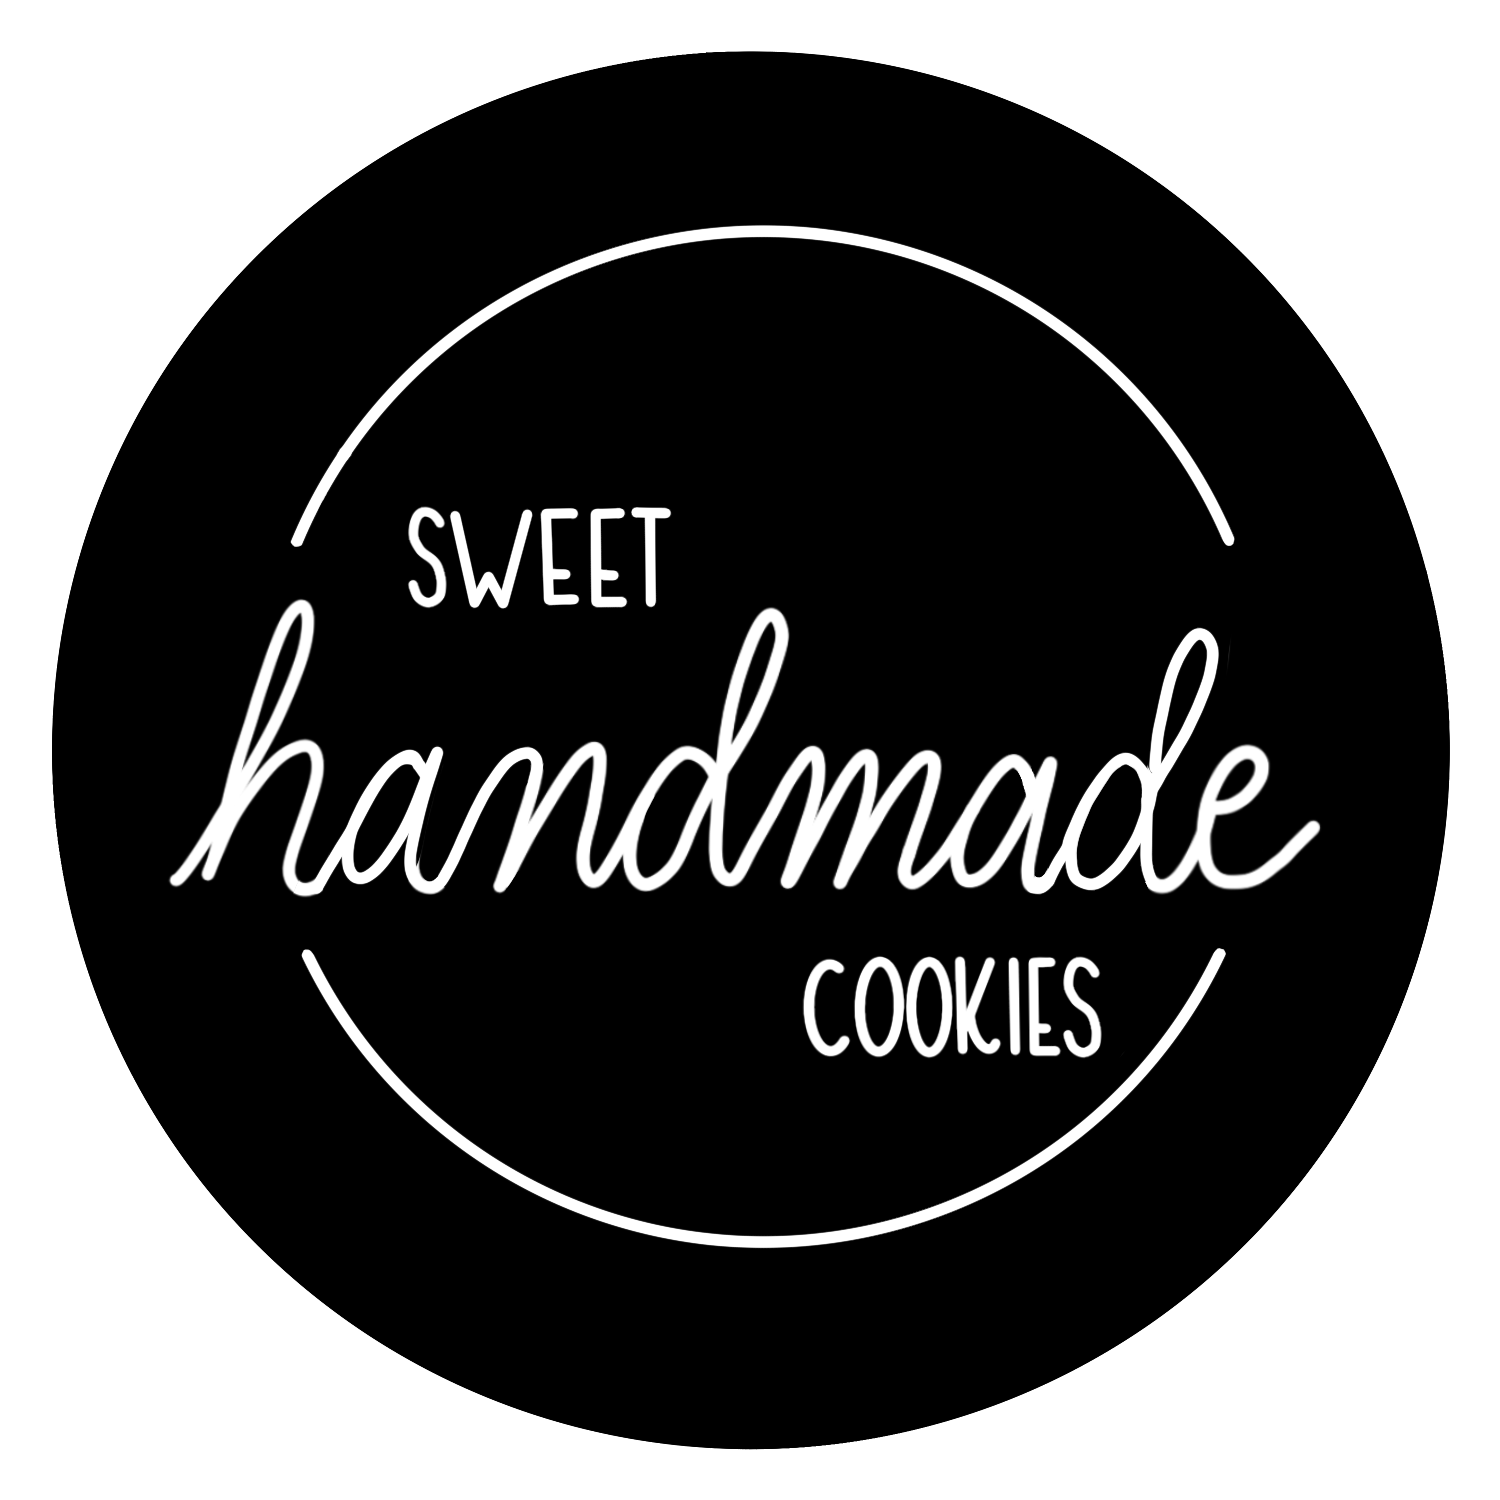 Sweet Handmade Cookies